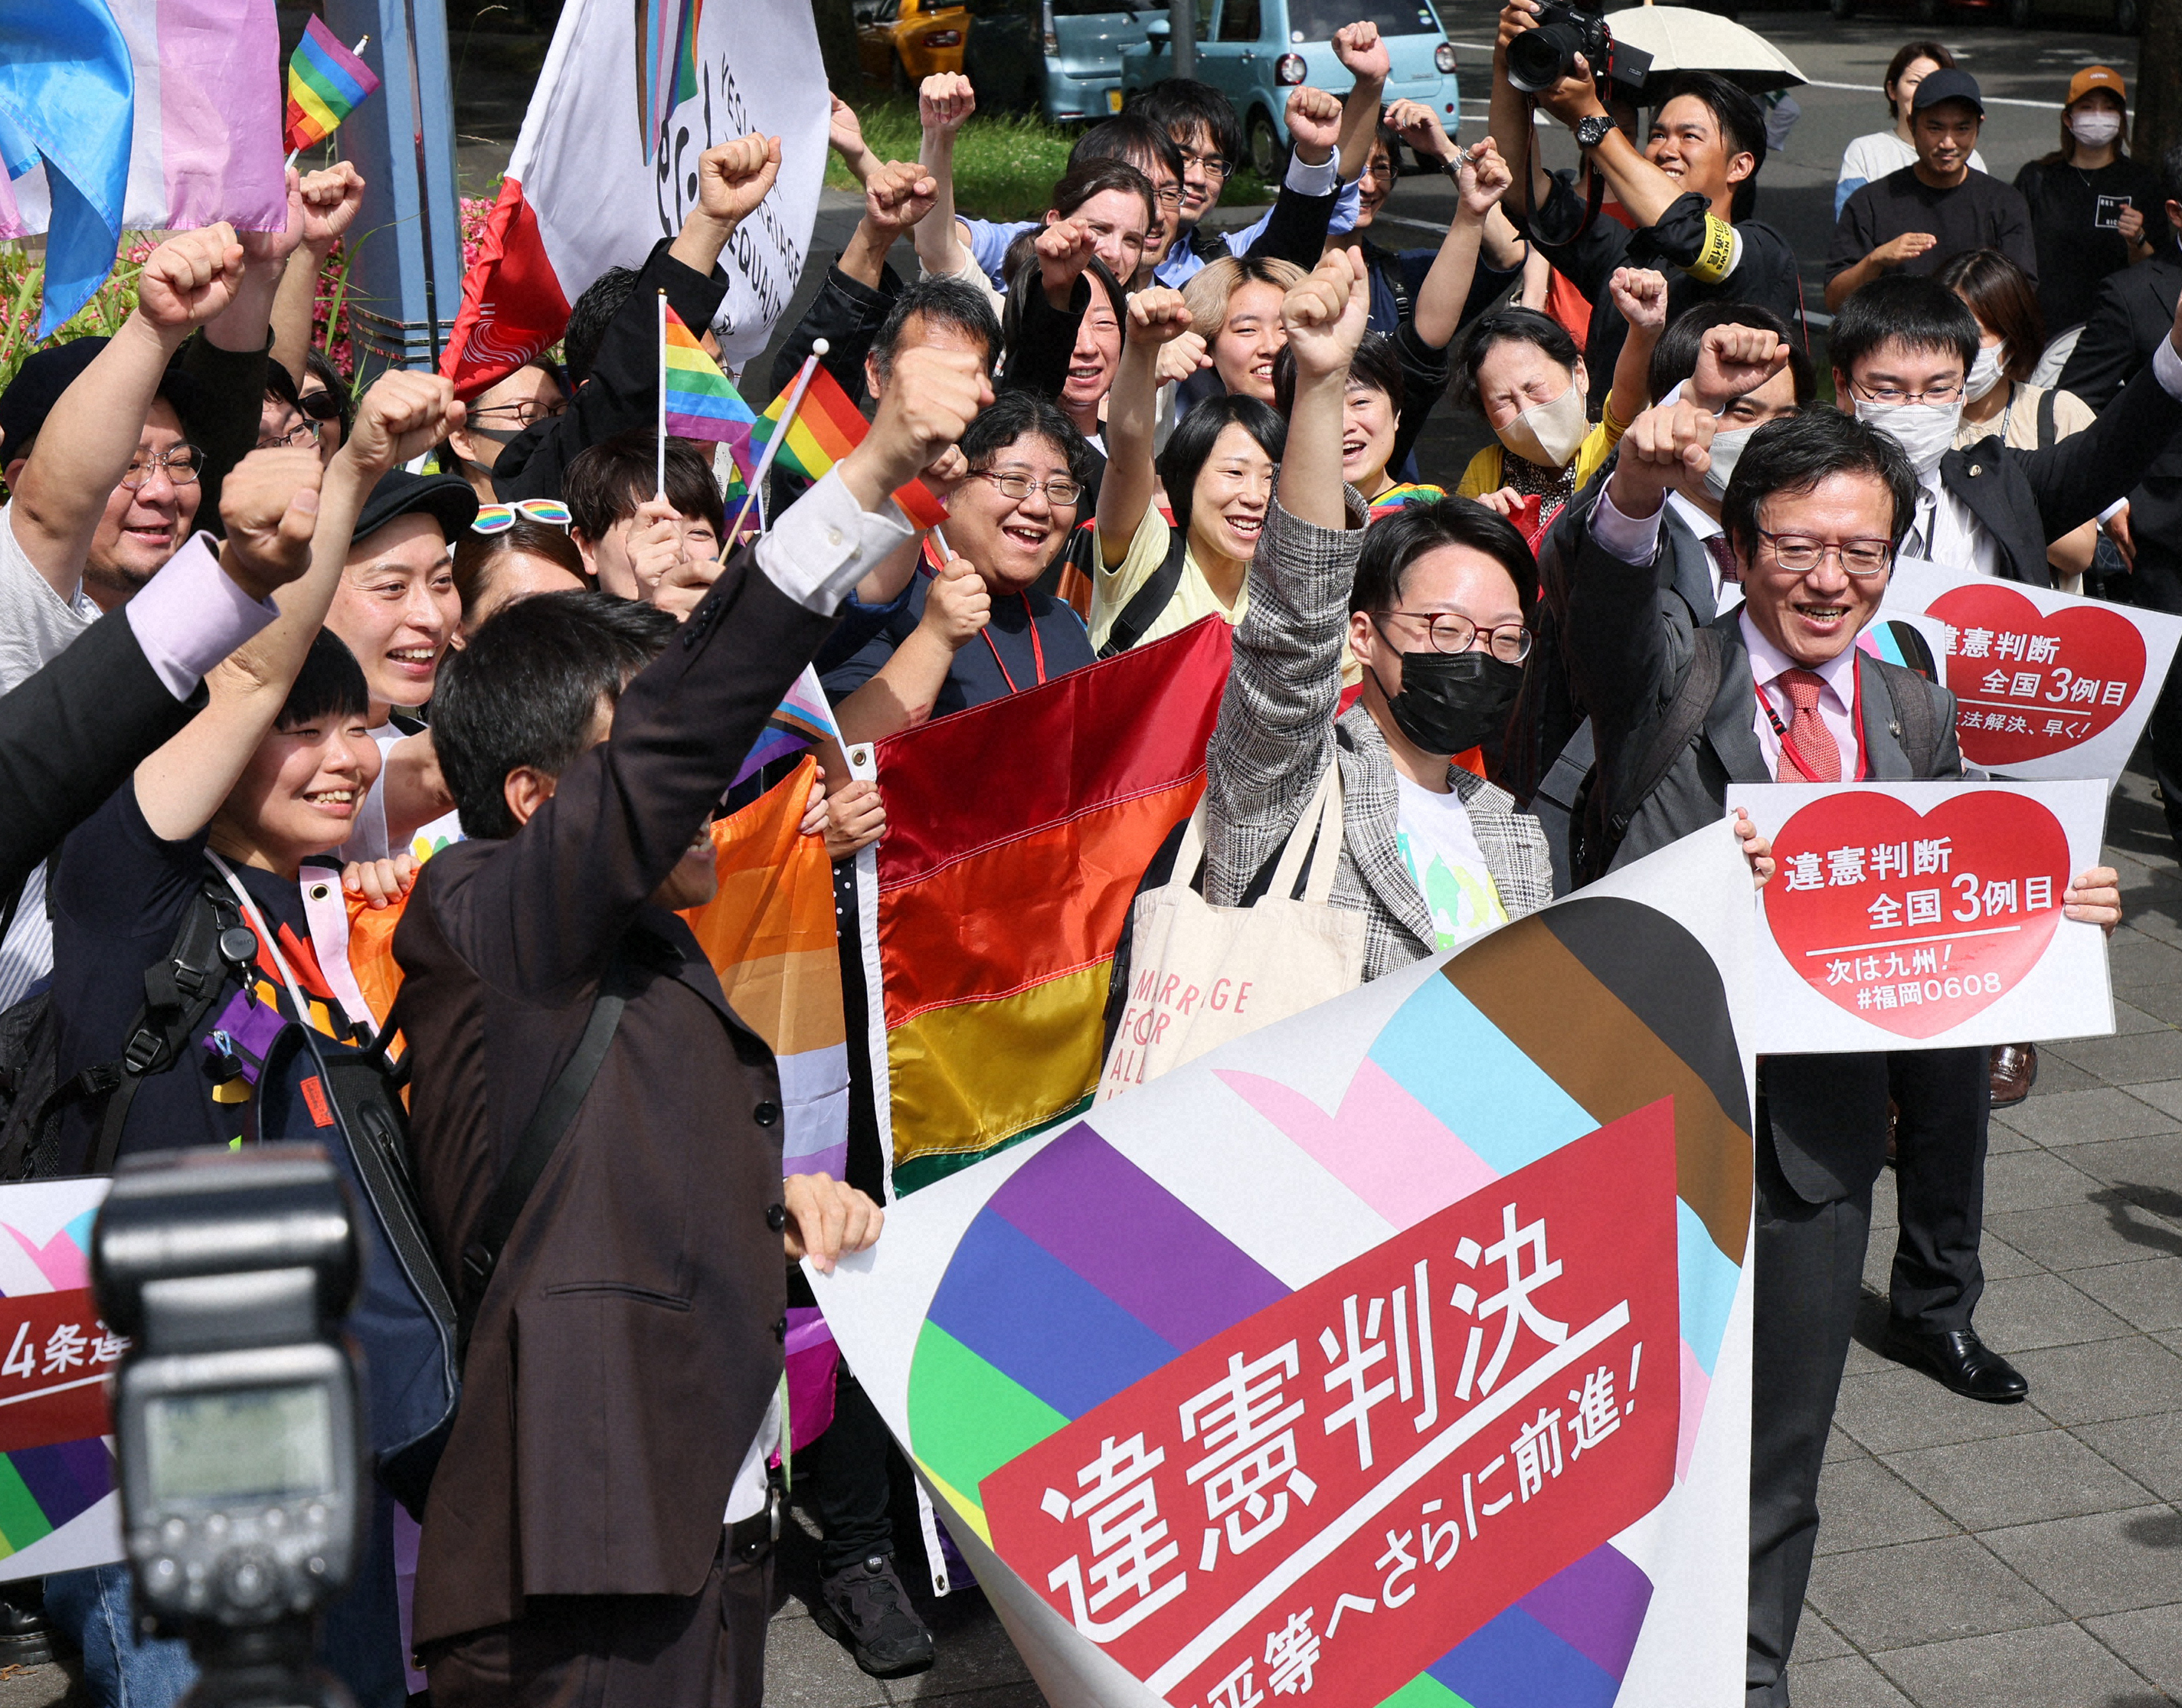 「同性婚を認めないのは違憲」との名古屋地裁判決を受け拳を突き上げる原告団ら